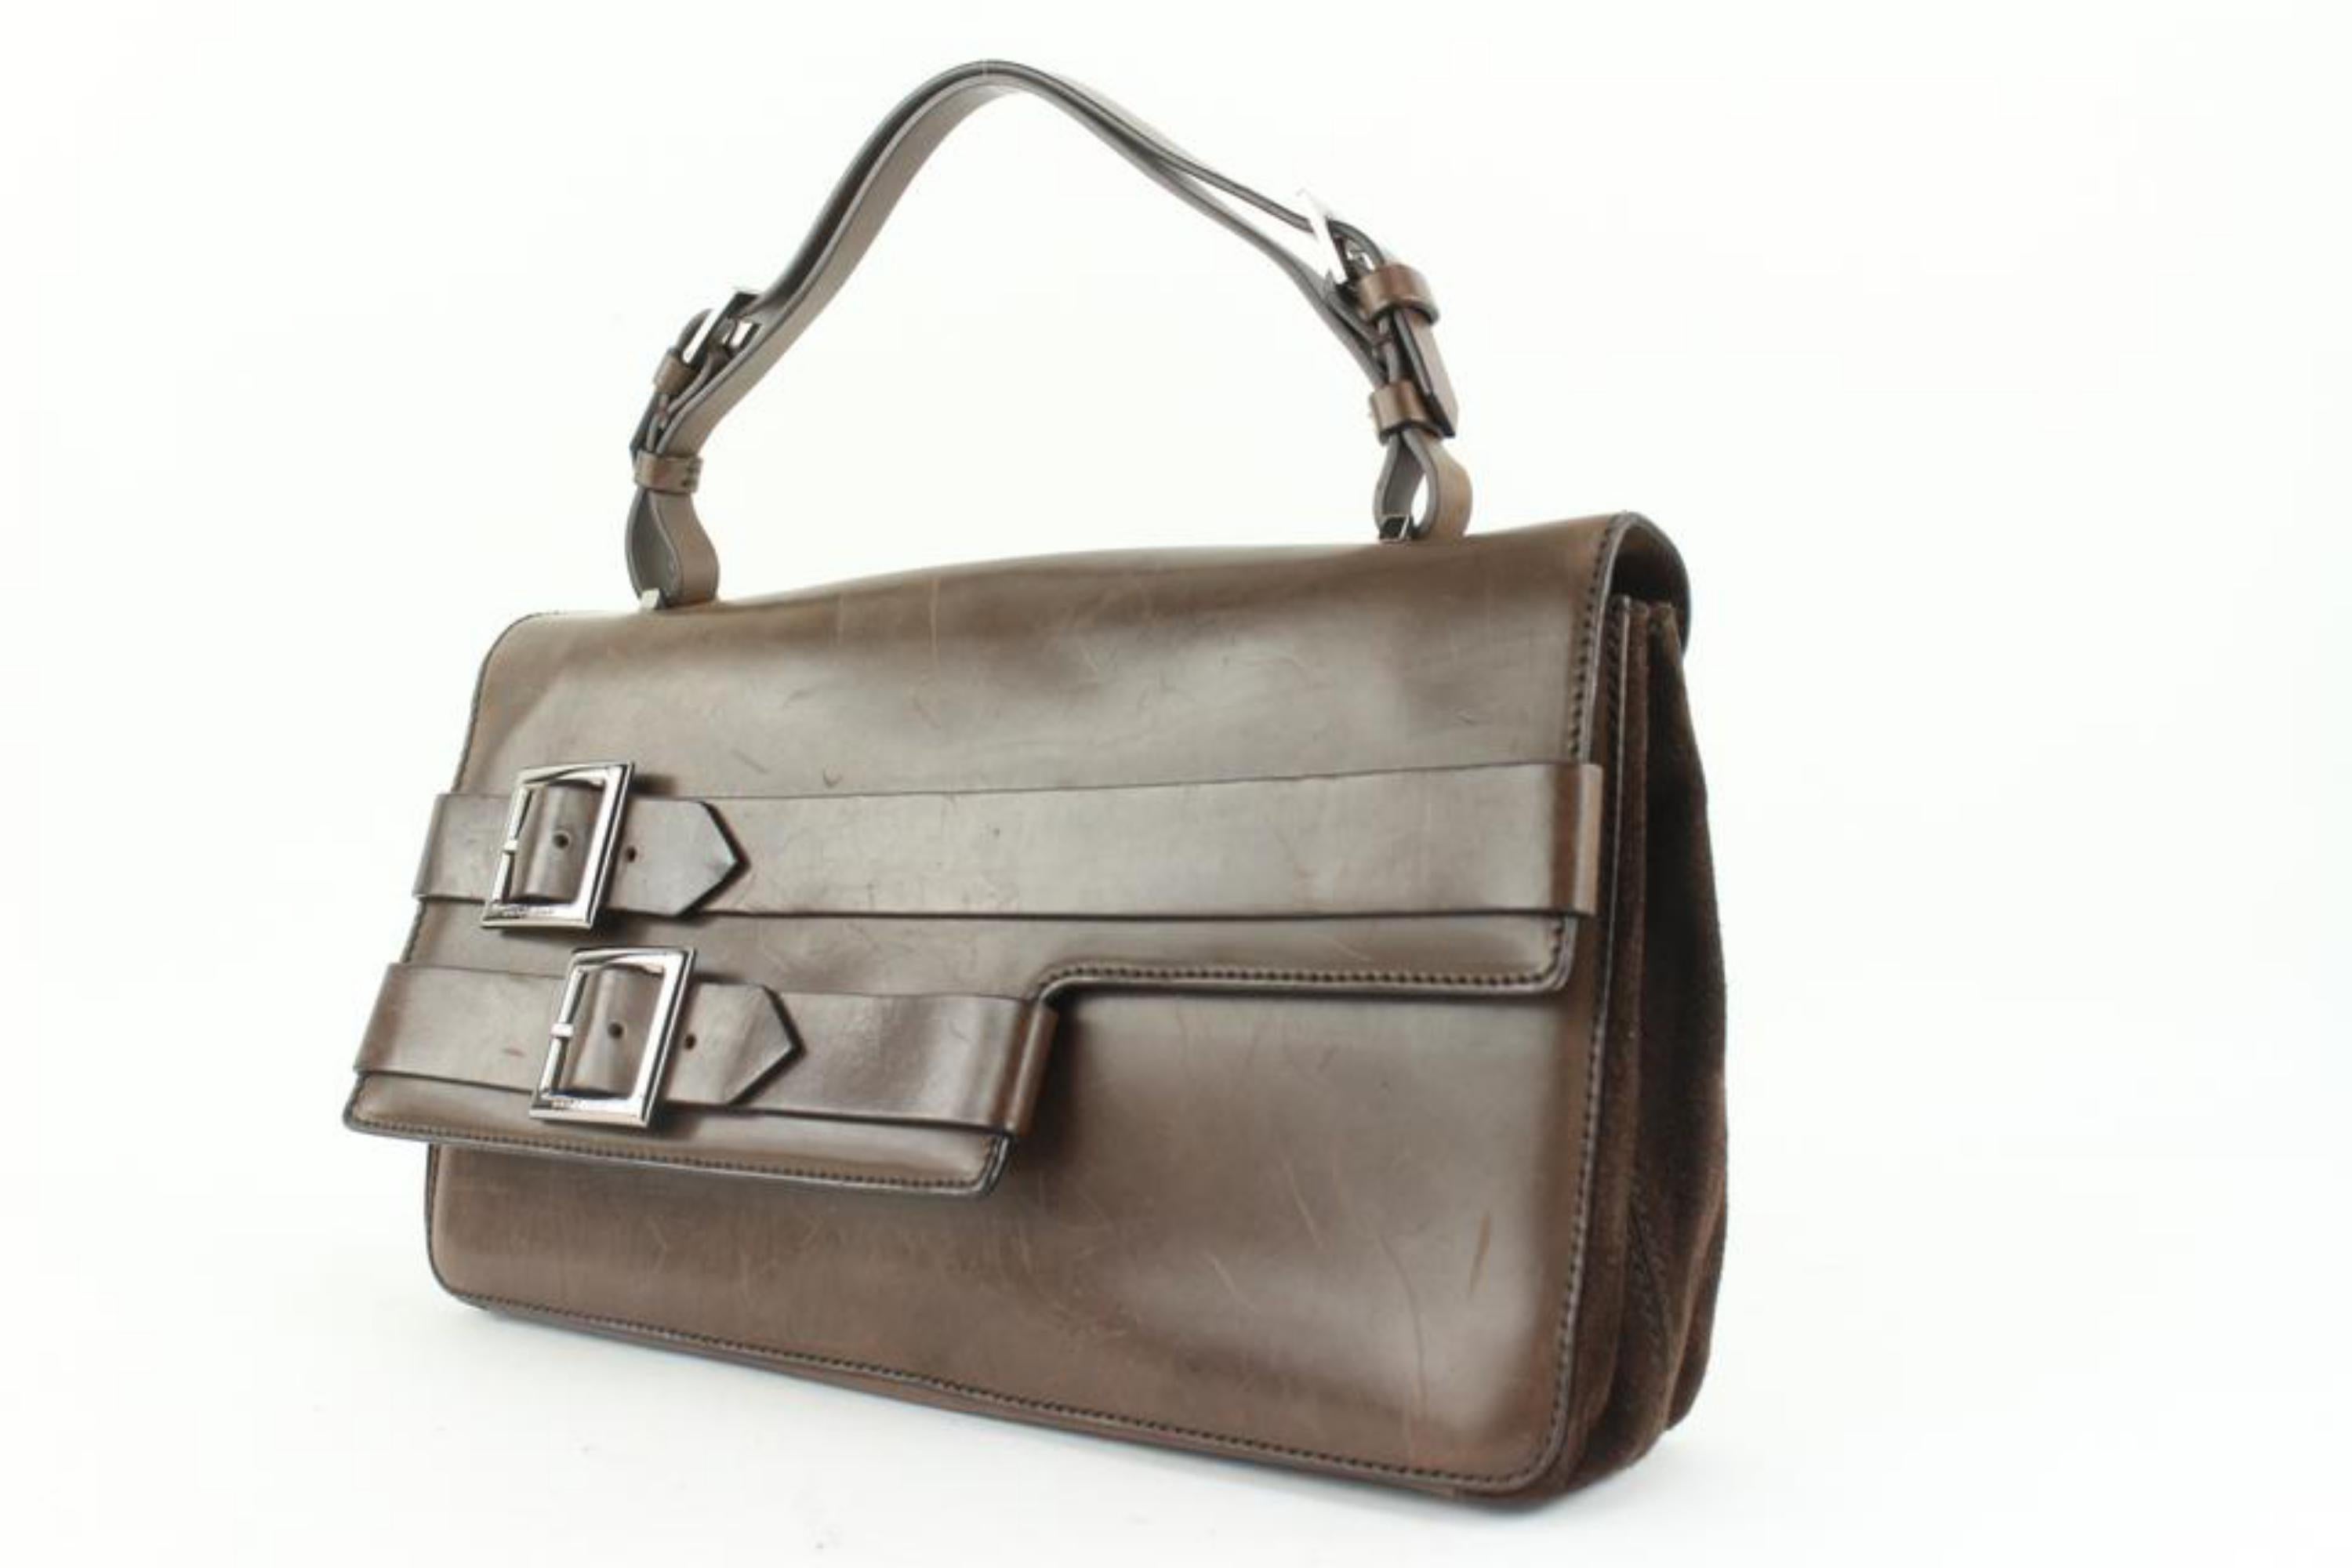 Dolce & Gabbana Brown Leather Belt Buckle Motif Top Handle Satchel Bag 4DG111
Fabriqué en : Italie
Dimensions : Longueur : 13 